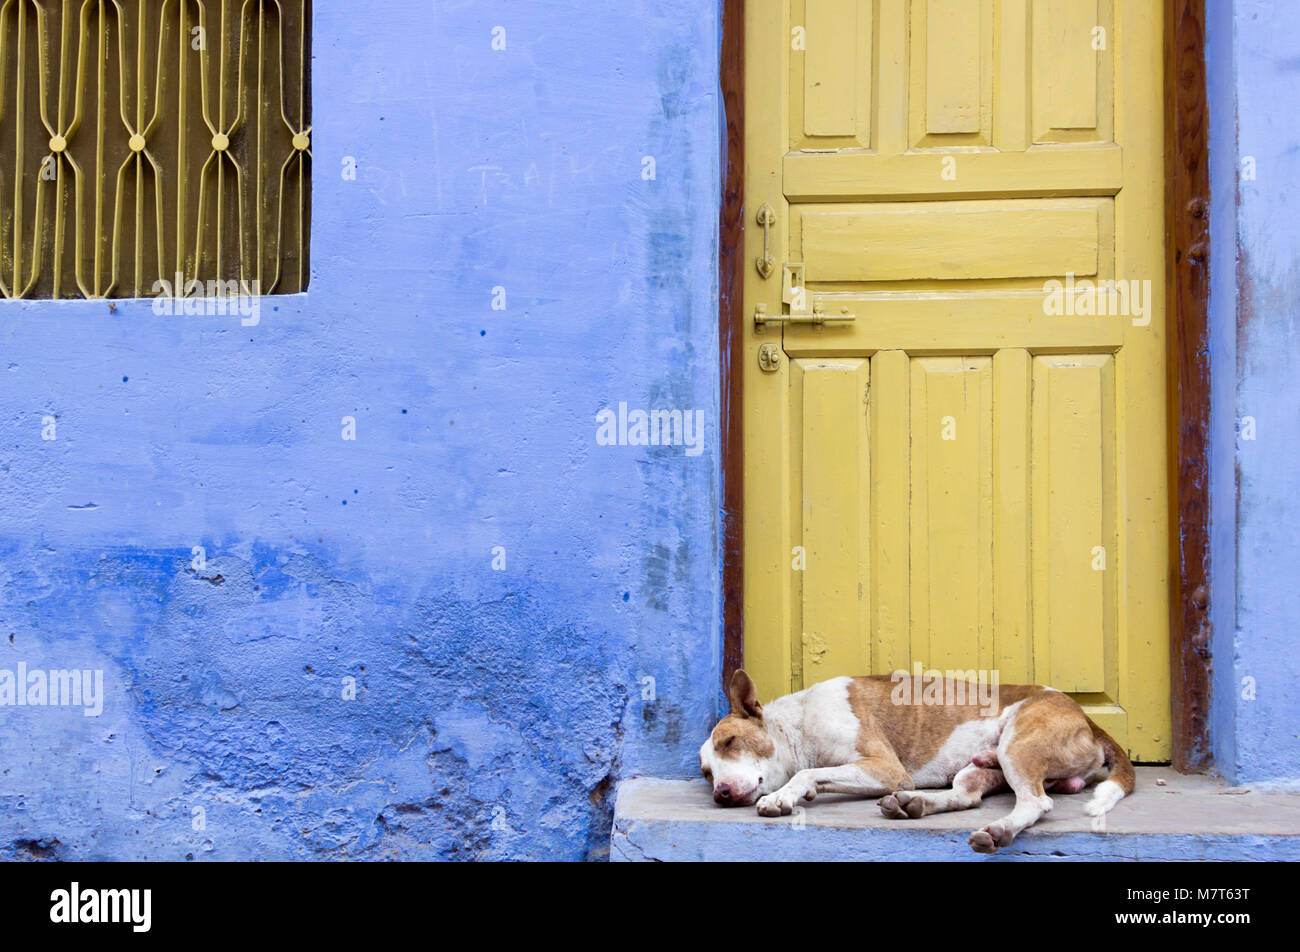 Chien solitaire se trouve en face d'une maison bleue avec une porte jaune, Bundi, Rajasthan, Inde. Banque D'Images